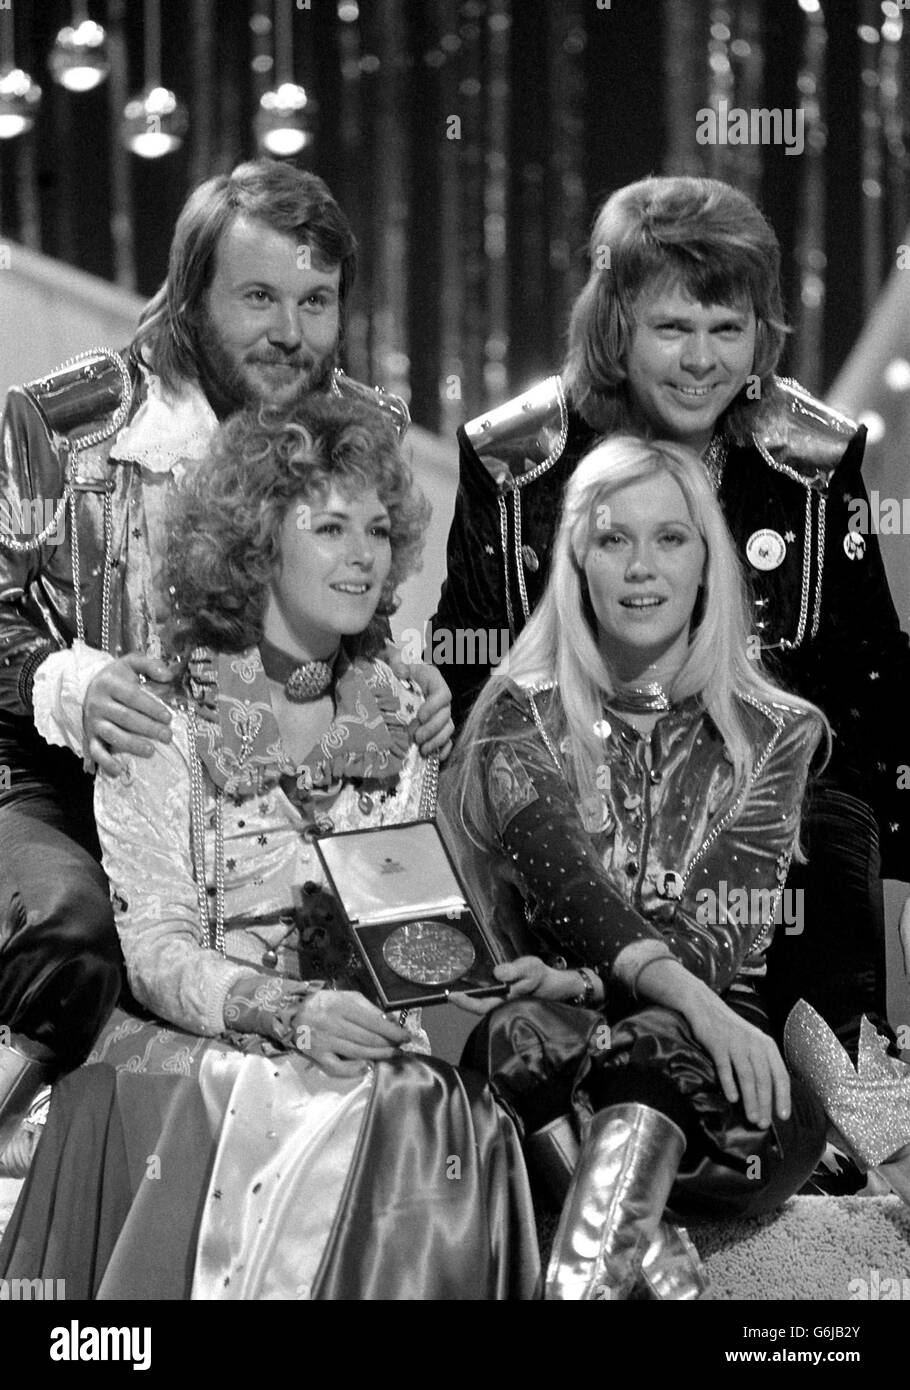 Le groupe pop Abba se félicite mutuellement à Brighton après avoir remporté le Concours Eurovision de la chanson pour la Suède avec 'Waterloo', chanté par les filles, Annifrid Lyngstad (Frida), deuxième à gauche, et Agnetha Faltskog (Anna). Les autres membres du groupe, Benny Andersson, à gauche, et Bjorn Ulvaeus, ont composé la chanson. Banque D'Images